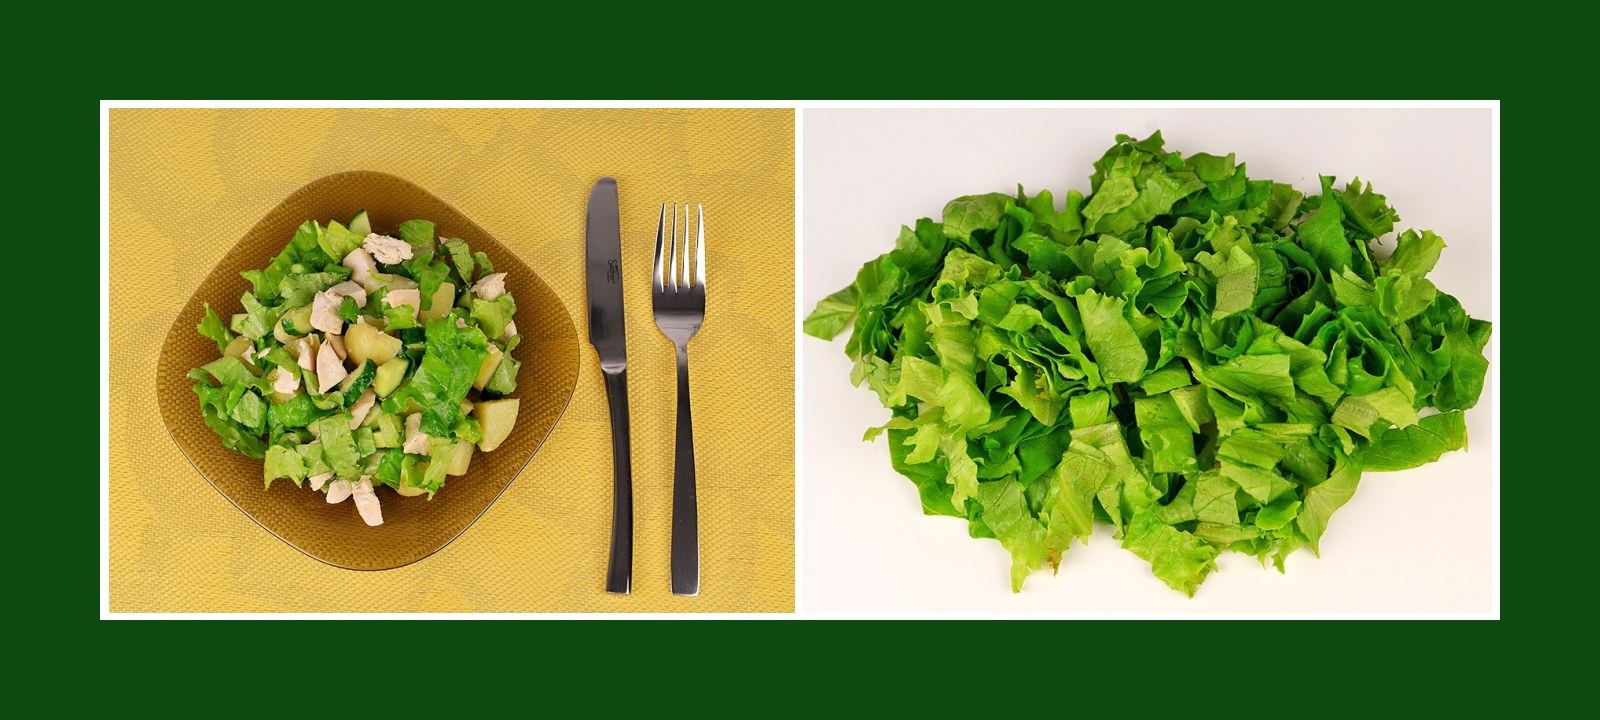 Salat für grünen Frühlingssalat